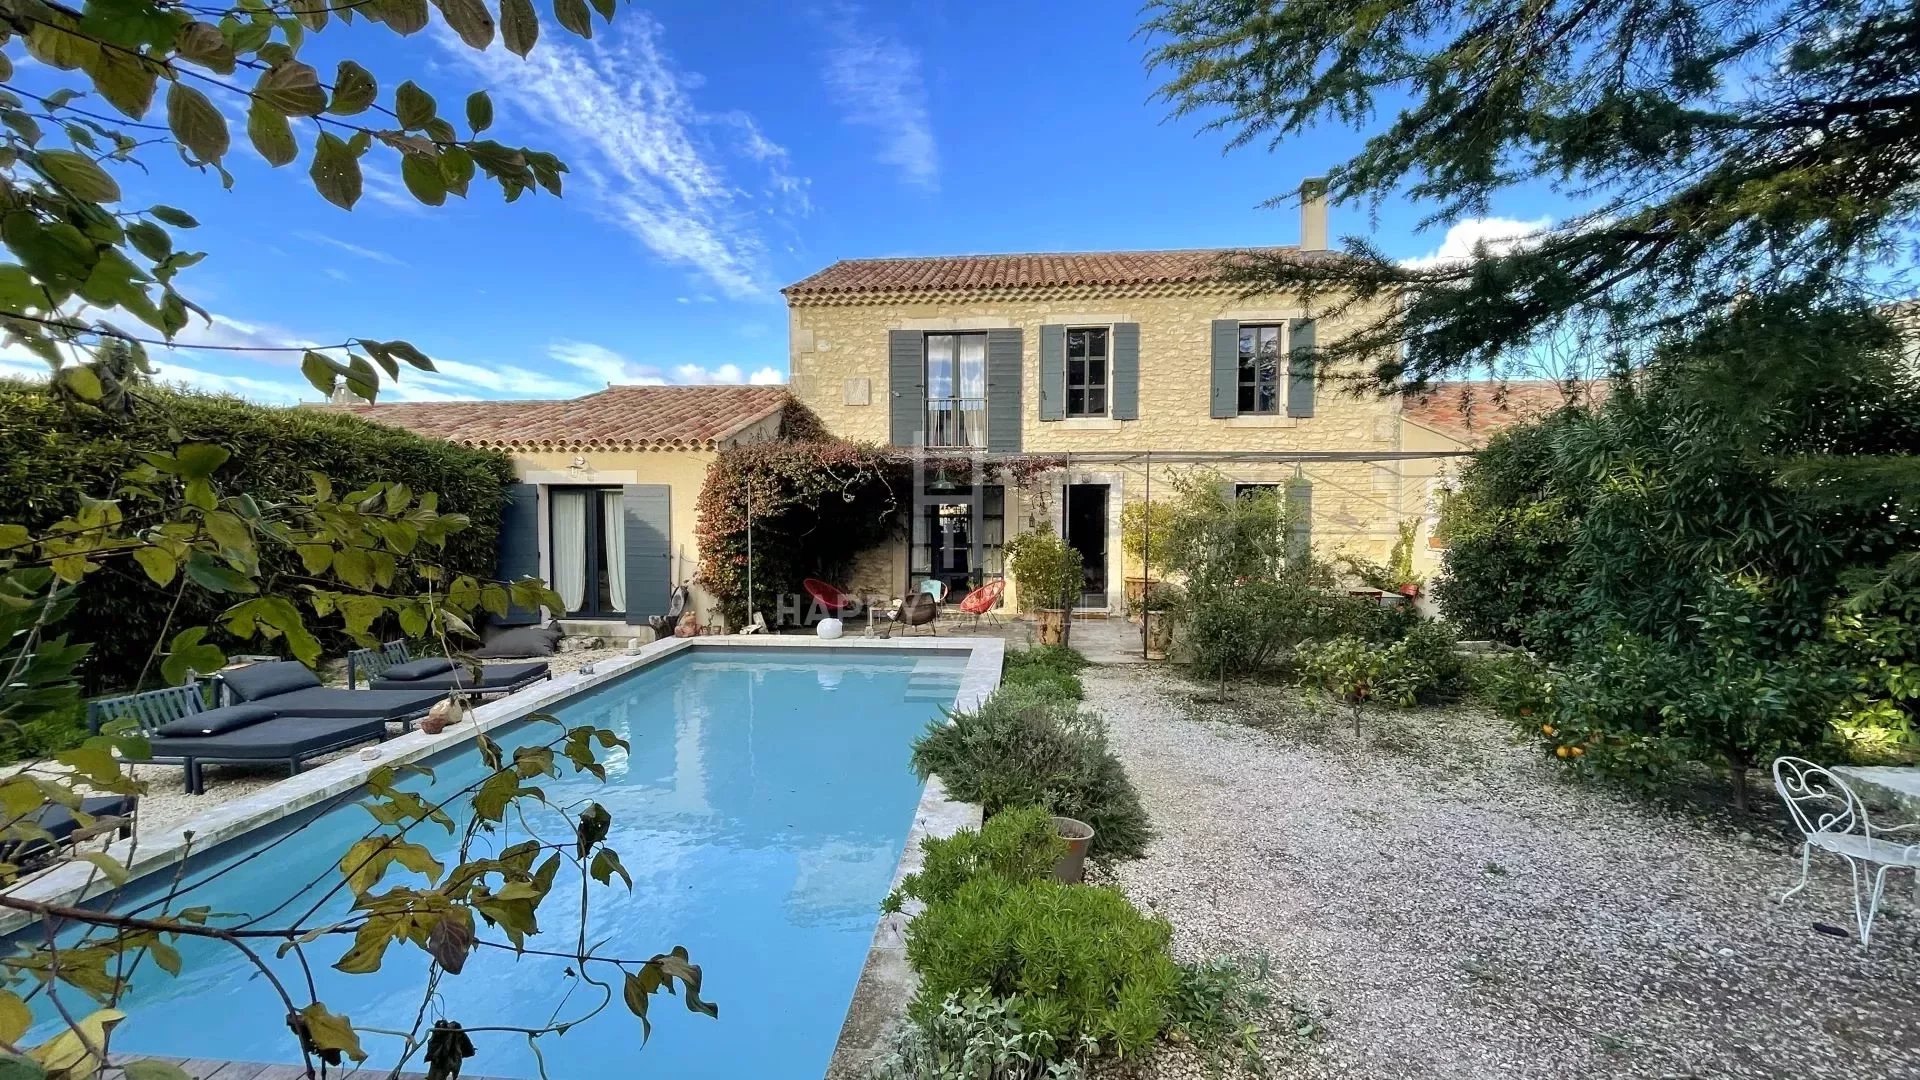 Saint-Rémy de Provence real estate agency and Maussane-les-Alpilles ...